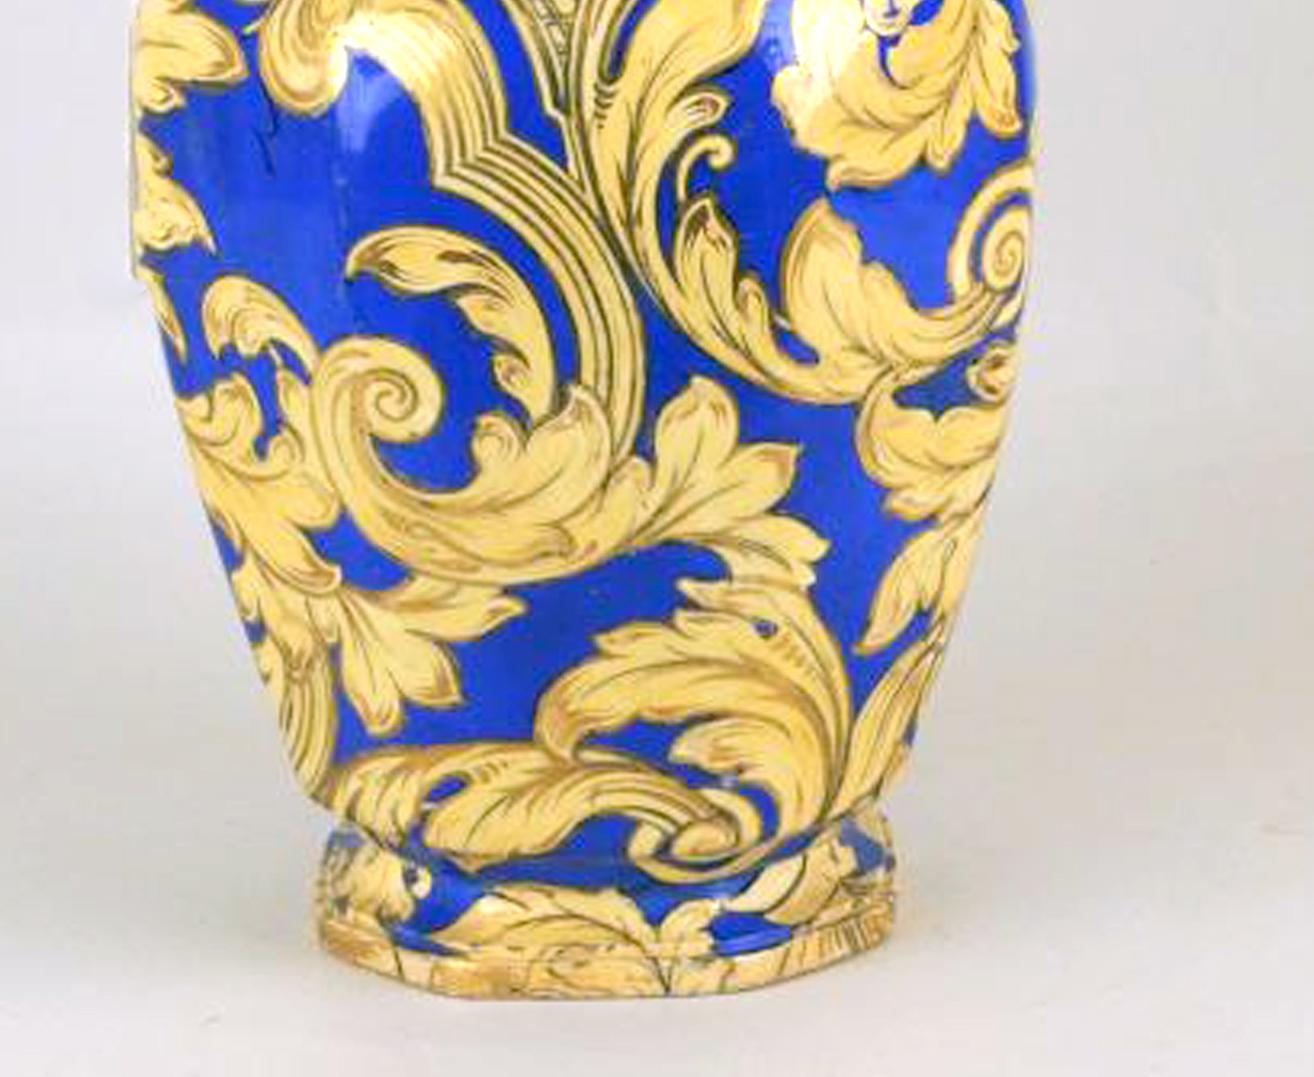 Die achteckige Vase hat einen tiefblauen Grund und ist in Gold und Gelb mit Rokoko-Blattranken und Blumenvasen bemalt. Die Drachenschnecke Griffe und verziert mit vergoldeten erhöhen gelb, die doppelte Delphin Finial ist ähnlich gefärbt.

Die Form